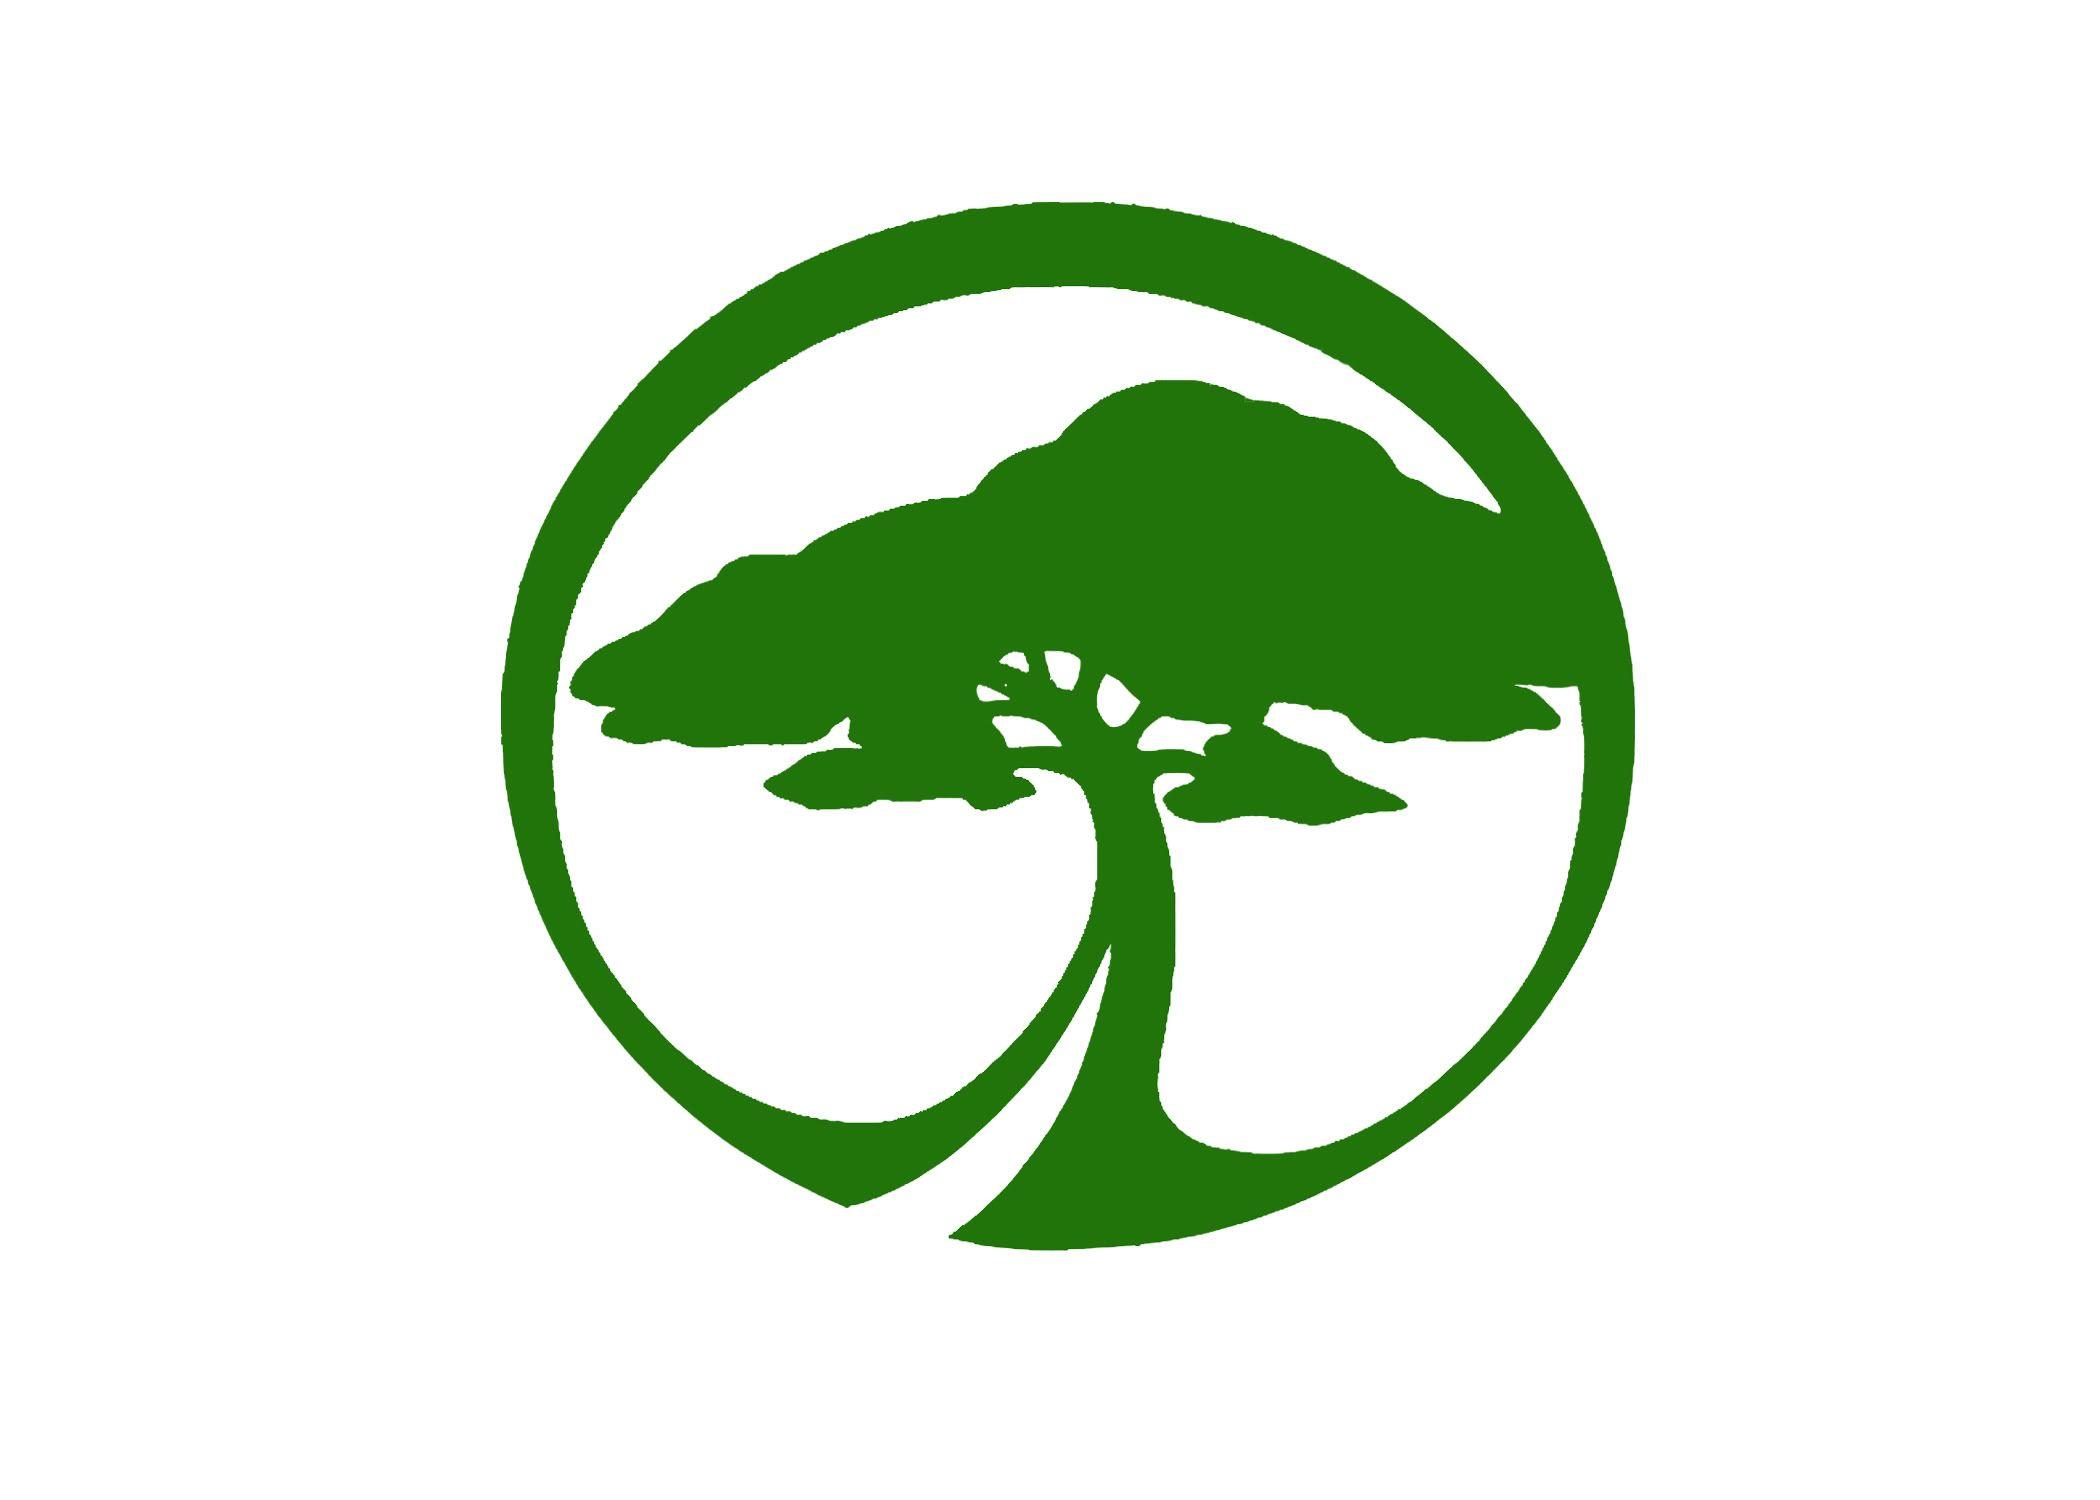 Landscaping Tools Logo - Gardening logo templates